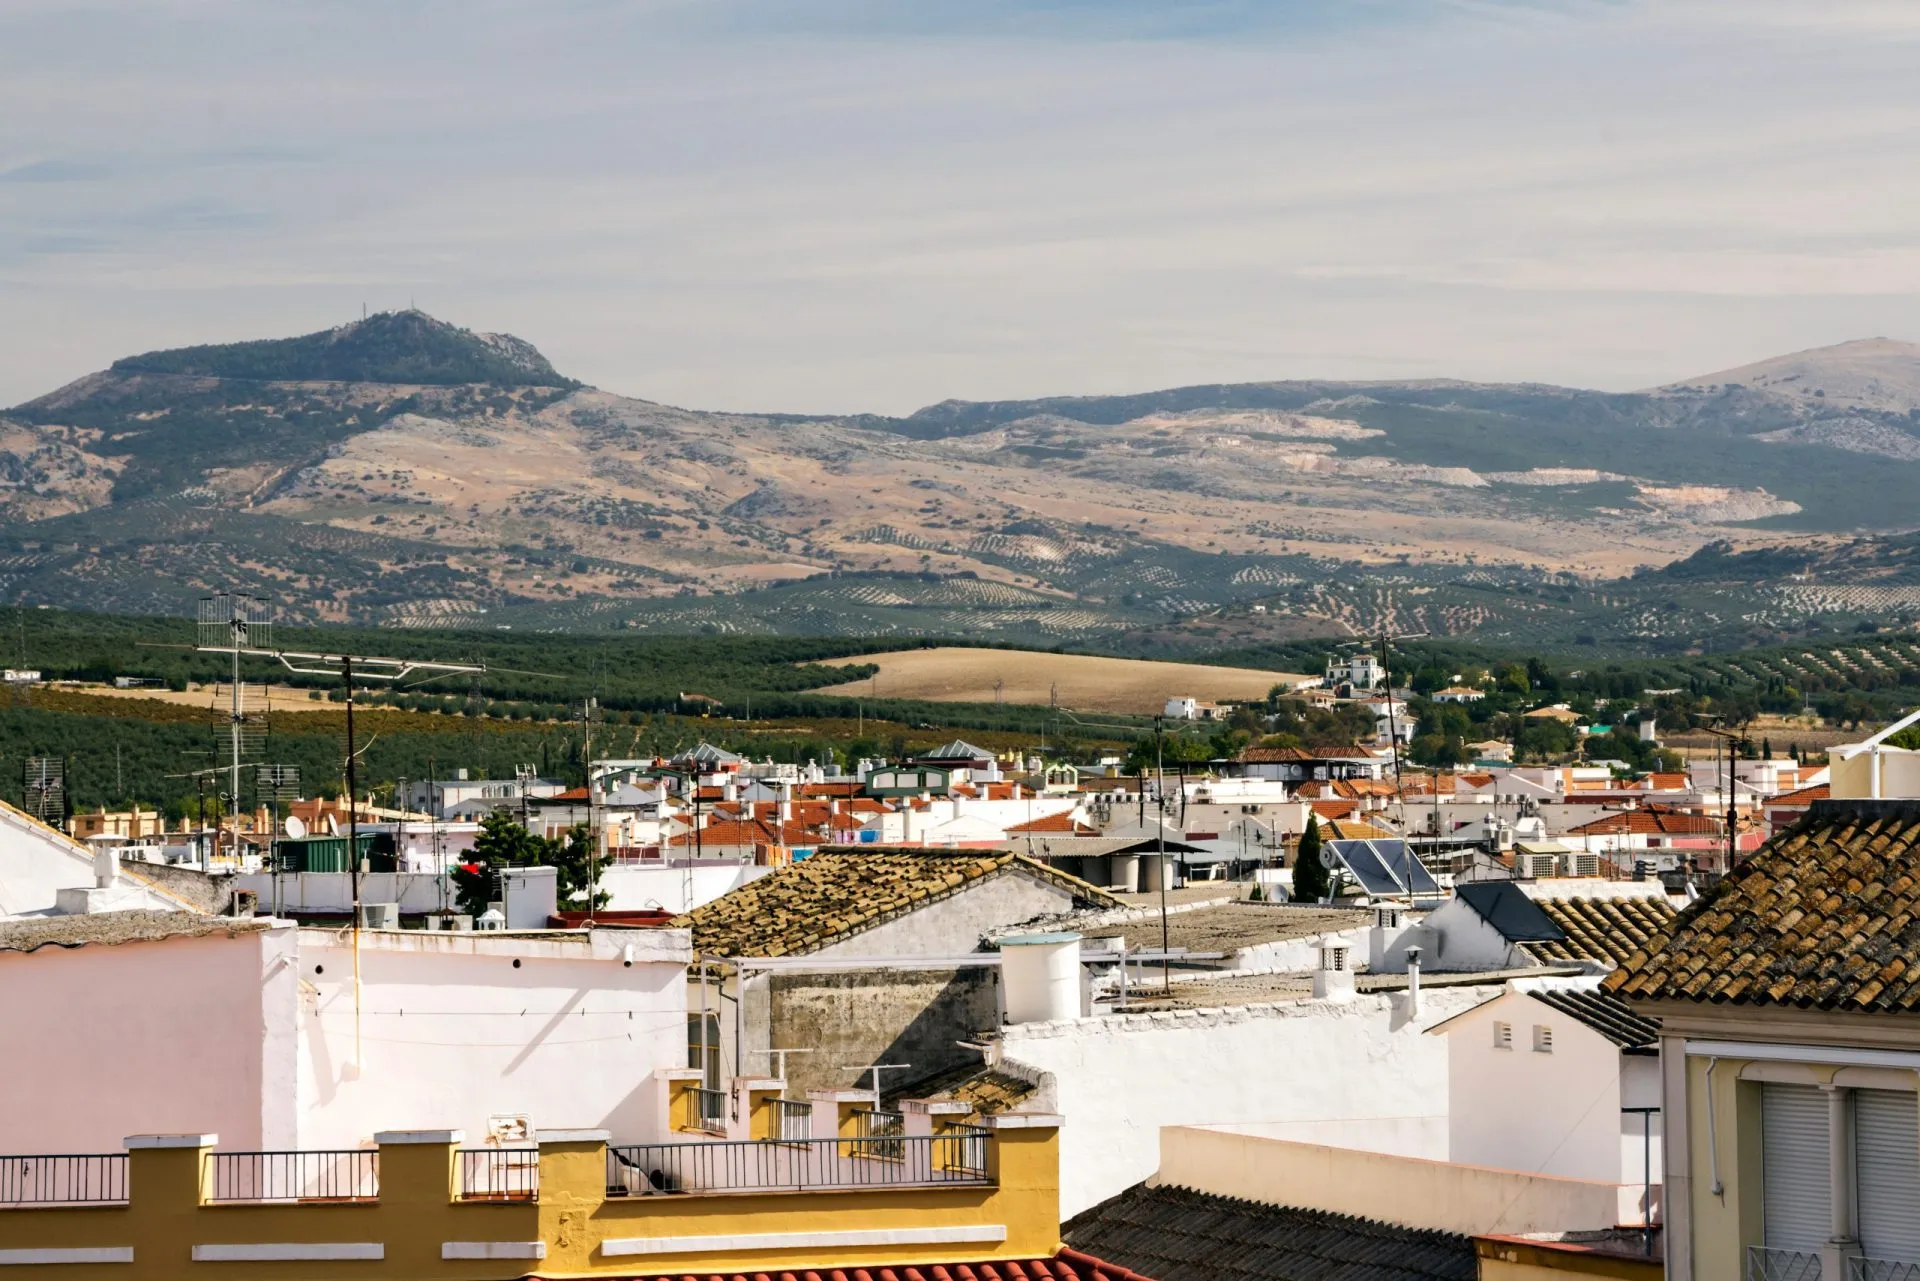 Lucena är en stad och en spansk kommun i provinsen Córdoba, Andalusien. Den ligger på 487 meters höjd och 67 kilometer från provinshuvudstaden Córdoba, Spanien.